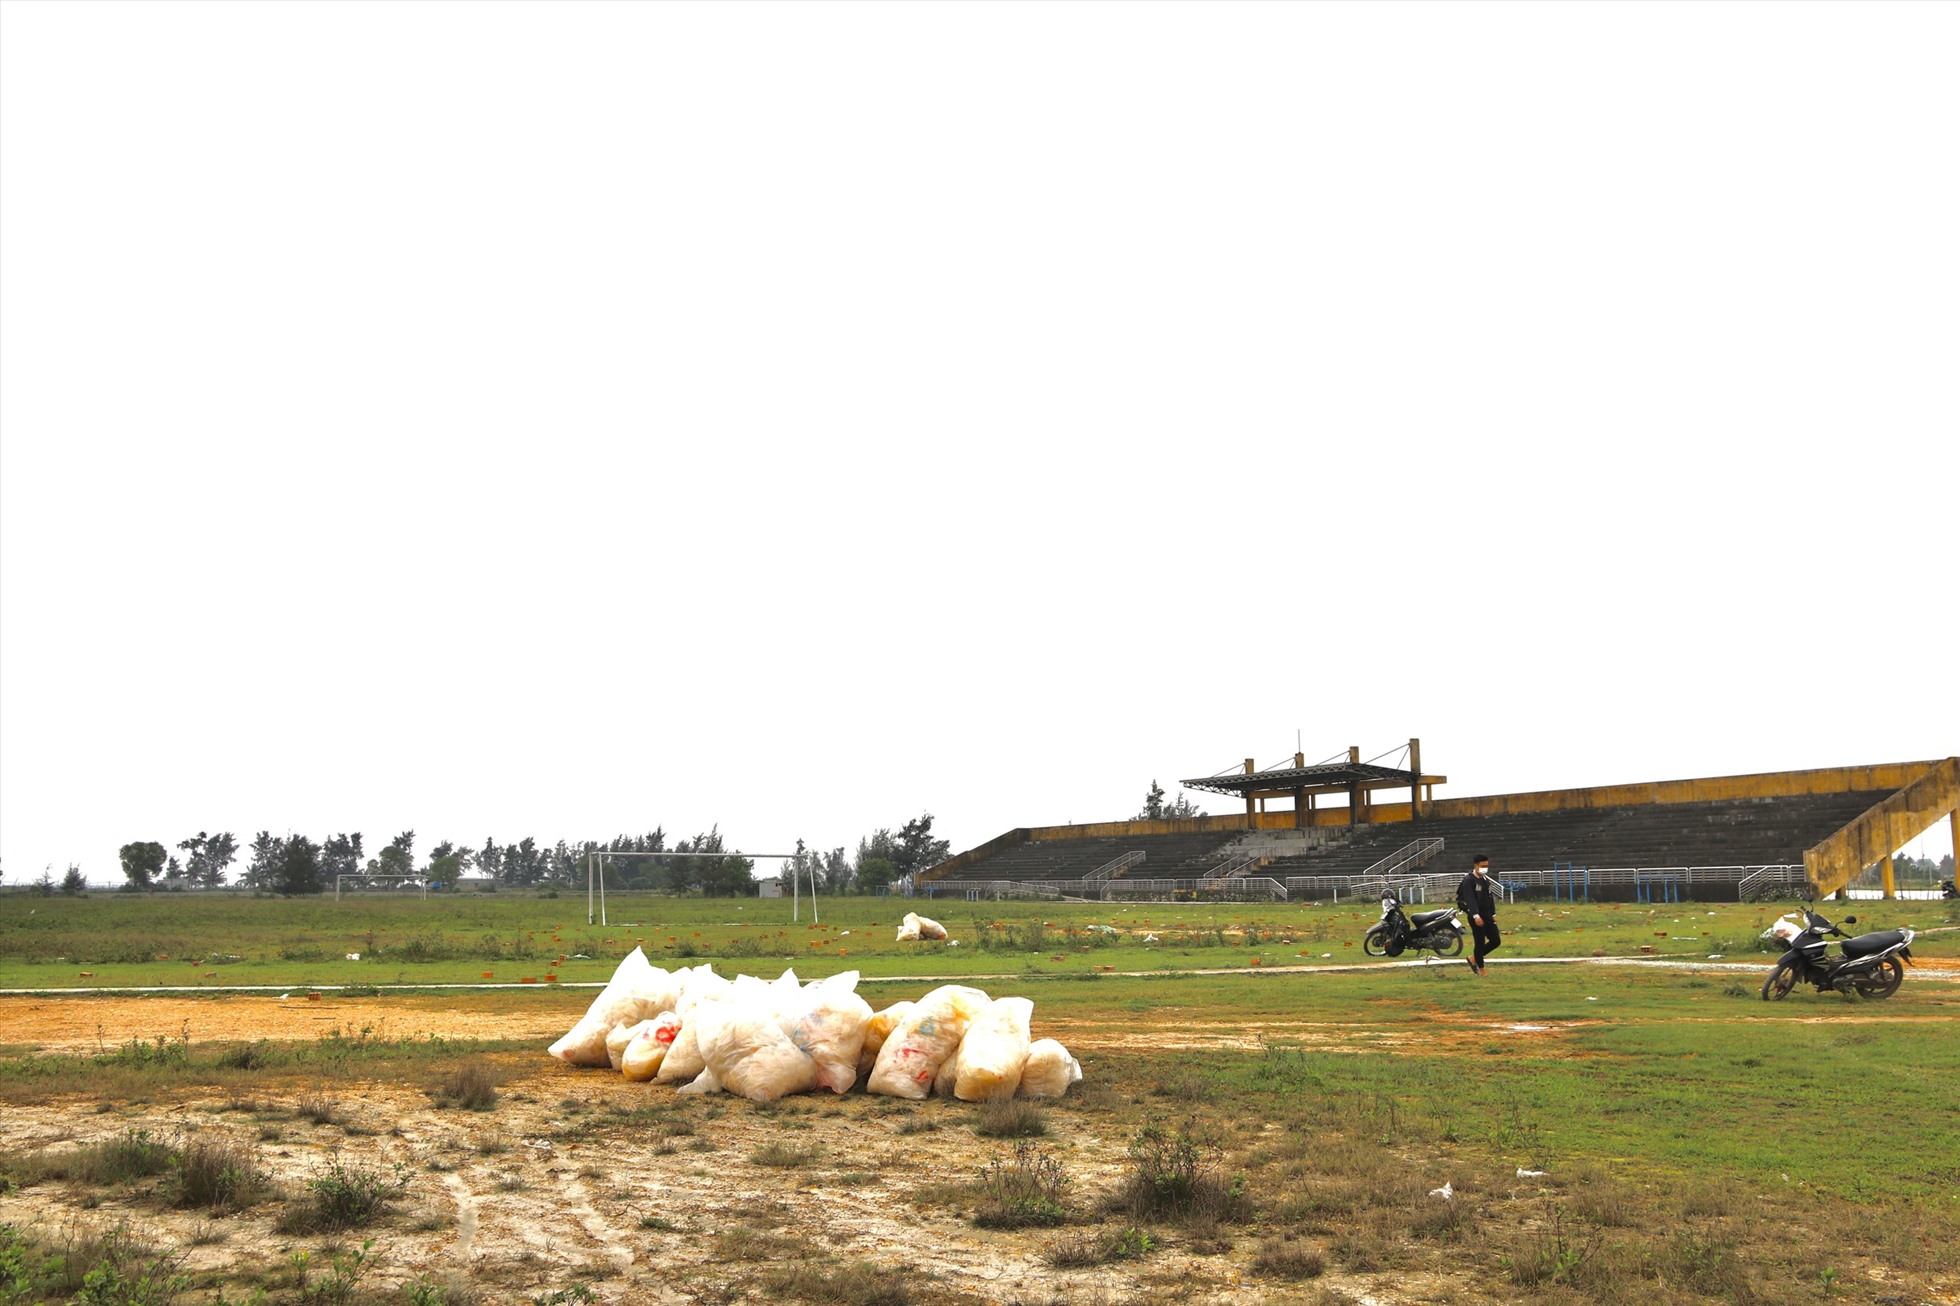 Được biết, sau khi dự án được bàn giao từ huyện Phú Vang sang TP Huế (do thị trấn Thuận An sáp nhập vào TP Huế, trở thành phường), Trung tâm VHTT Thuận An có giá trị đầu tư hàng chục tỉ này lại bị bỏ hoang lãng phí. Theo người dân địa phương, dự án này đã bỏ hoang trong vài năm qua, biến nơi này thành một nơi tập kết rác thải, trâu bò có thể ra vào tự do, đặc biệt dự án bỏ hoang này là nơi trú ngụ, hoạt động của các đối tượng nghiện ngập.